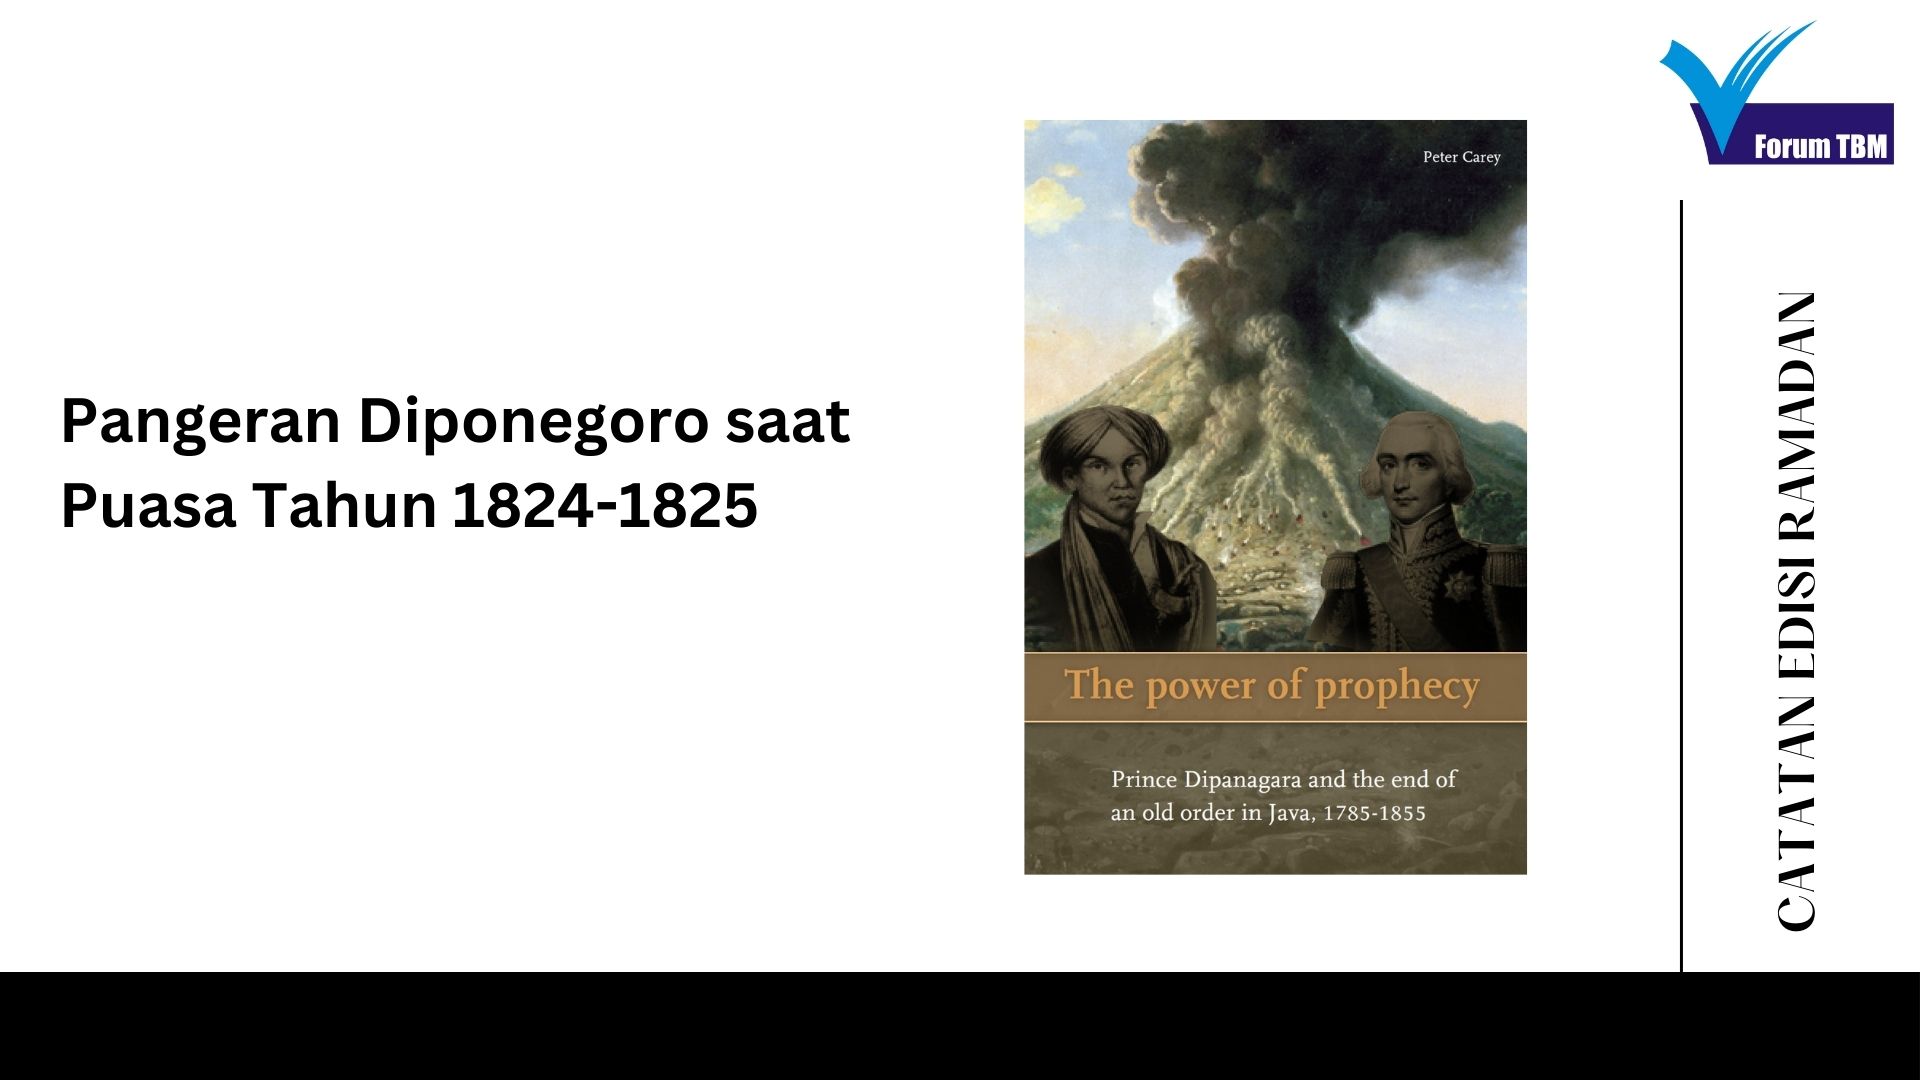 Pangeran Diponegoro saat Puasa Tahun 1824-1825